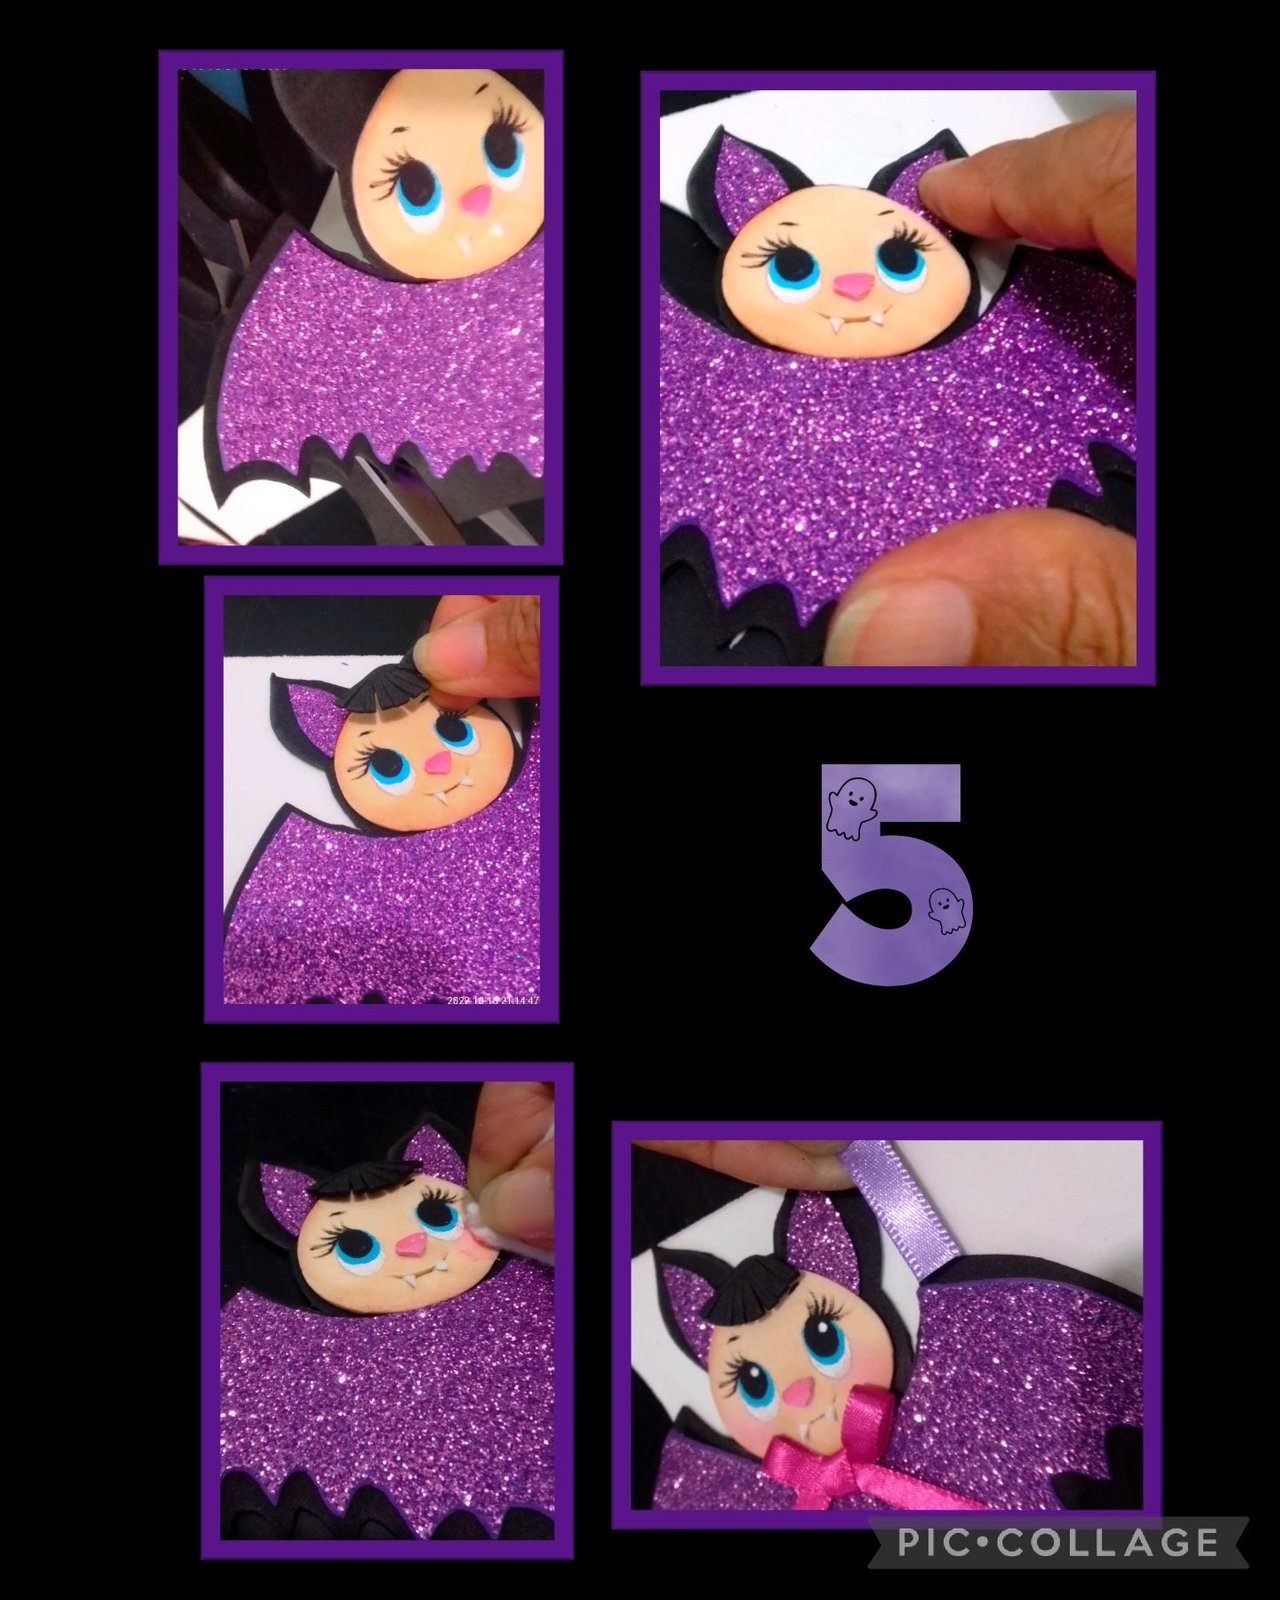 Disfraz de Minnie/Mimi Mouse paso a paso Parte 1, Disfraz para niña pequeña, fácil y rápido